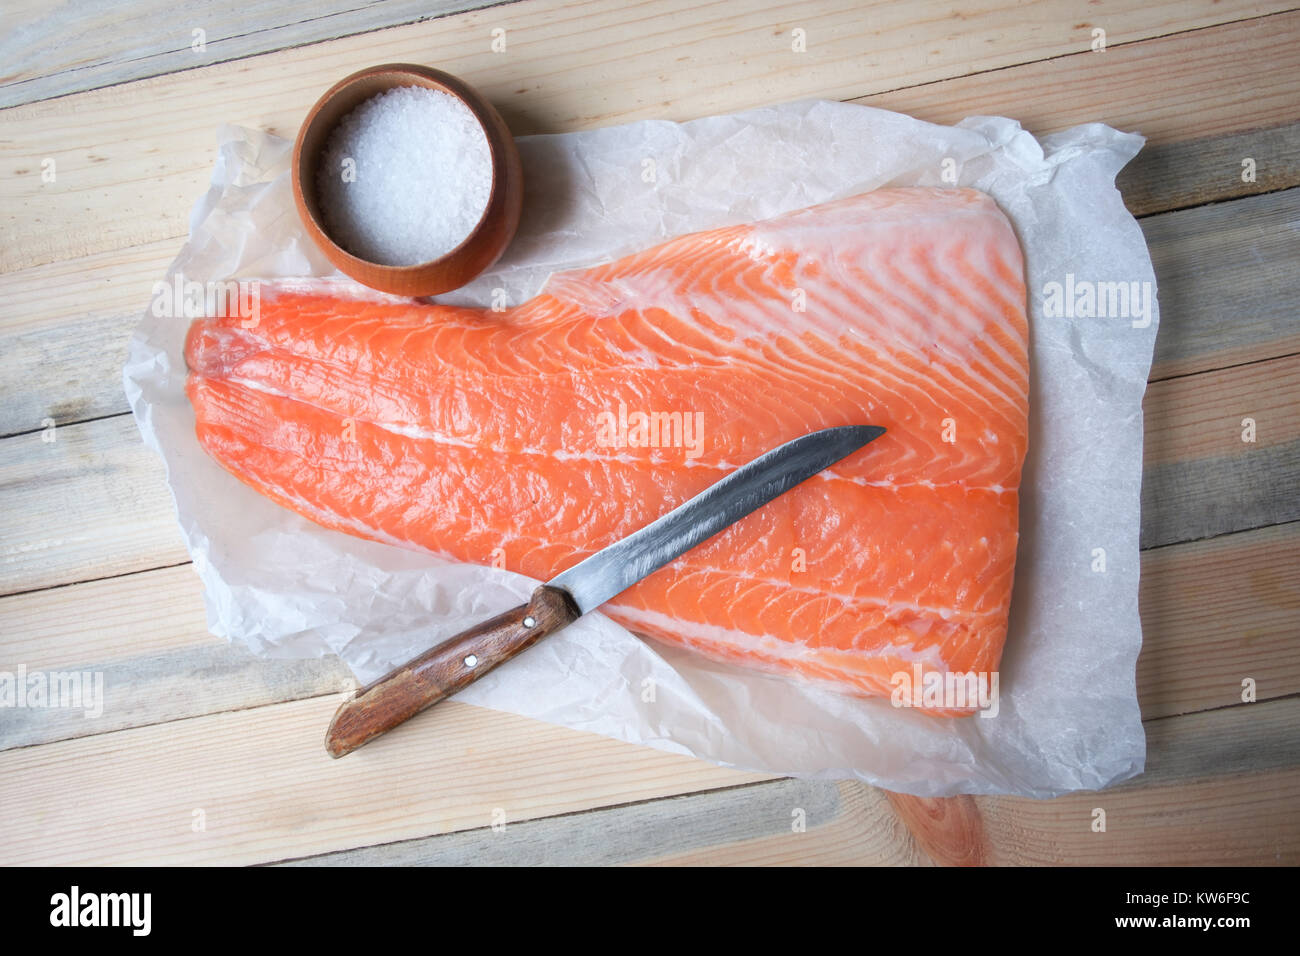 Le filet de saumon le poisson sur la table en bois Banque D'Images